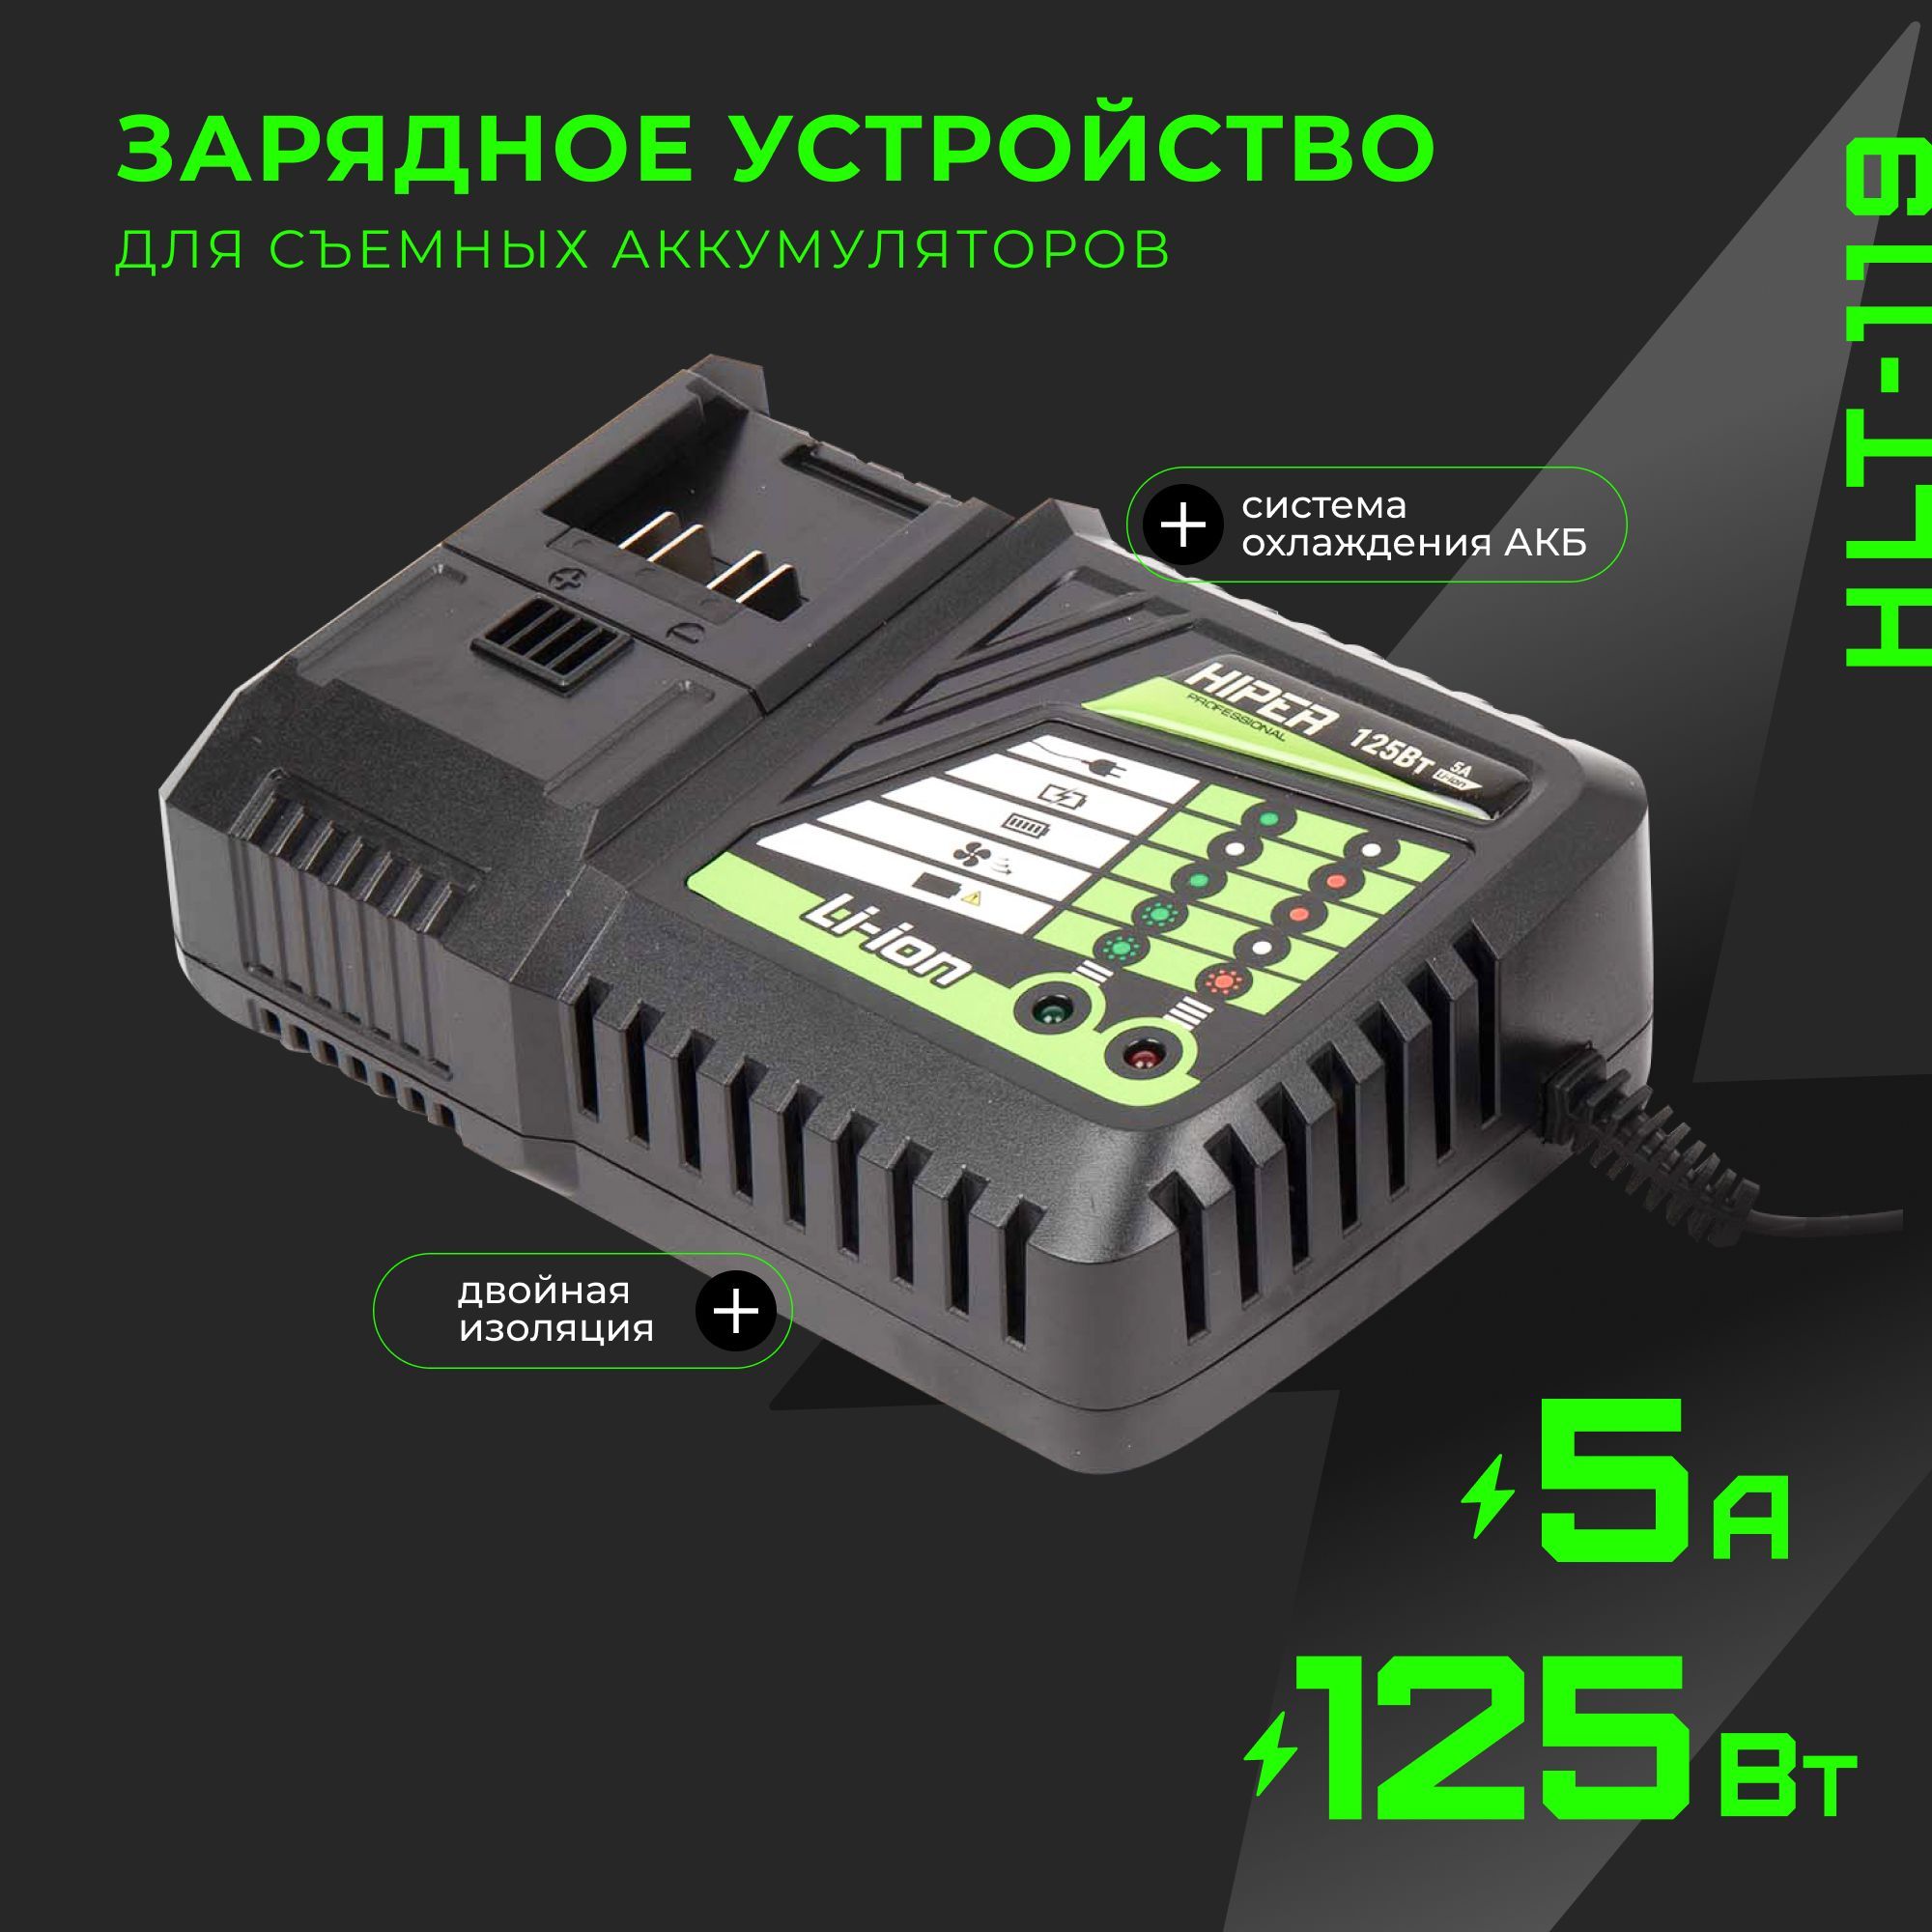 Сетевое зарядное устройство HIPER HLT-119, 125Вт, 5А, двойная изоляция, система охлаждения сетевое зарядное устройство anker powerport iii cube 20 вт a2149